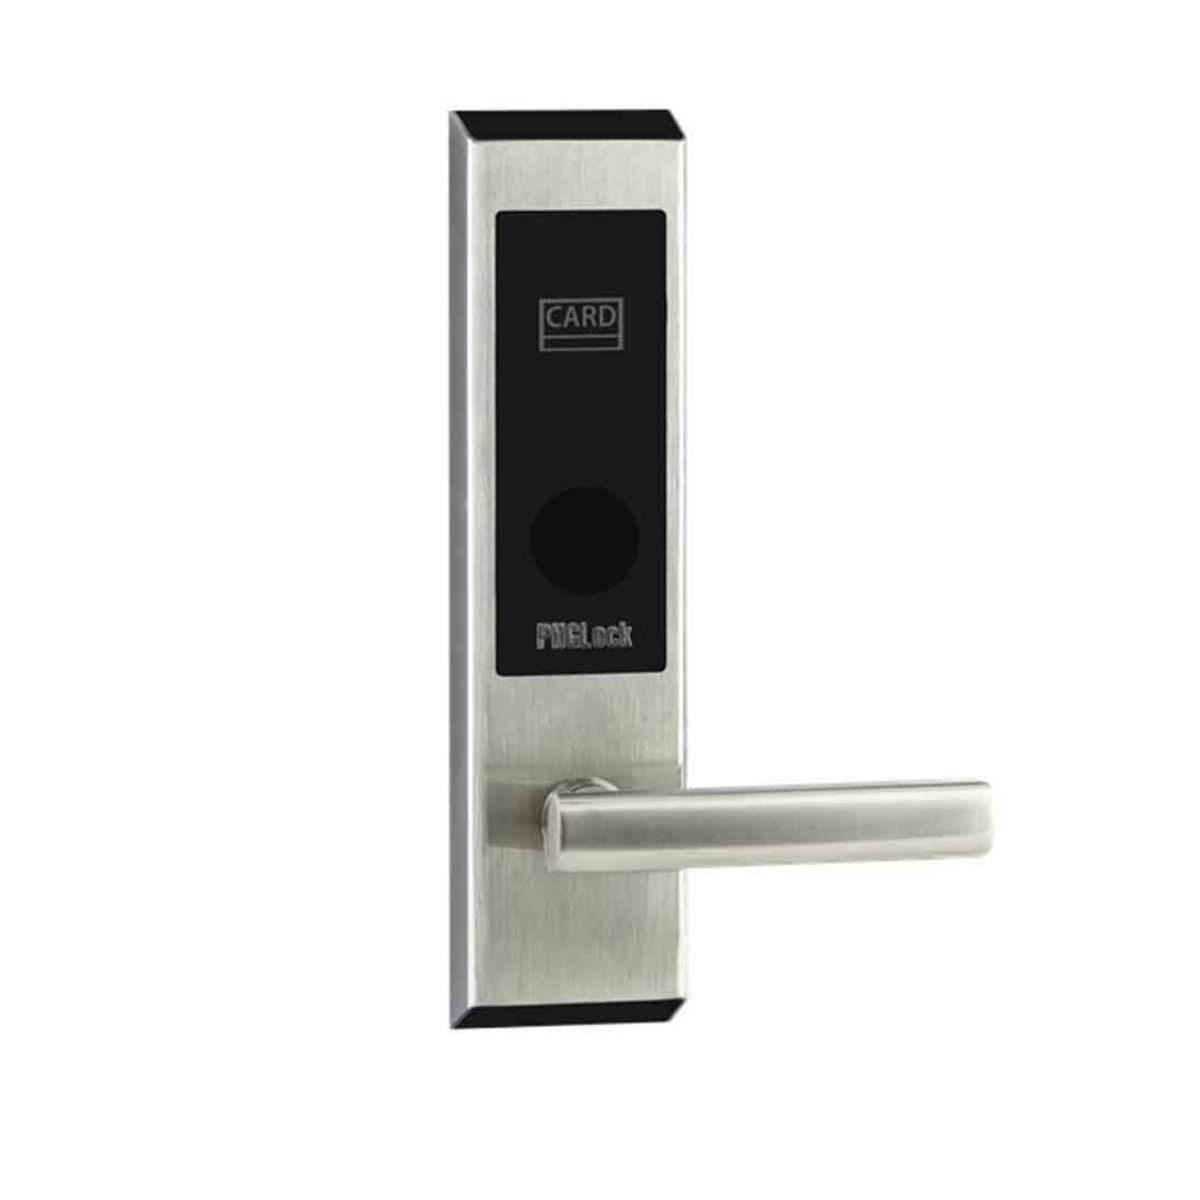 Khóa cửa thẻ từ cho khách sạn PHGLock RF7203 màu bạc, thẻ từ TM08 và chìa khóa cơ